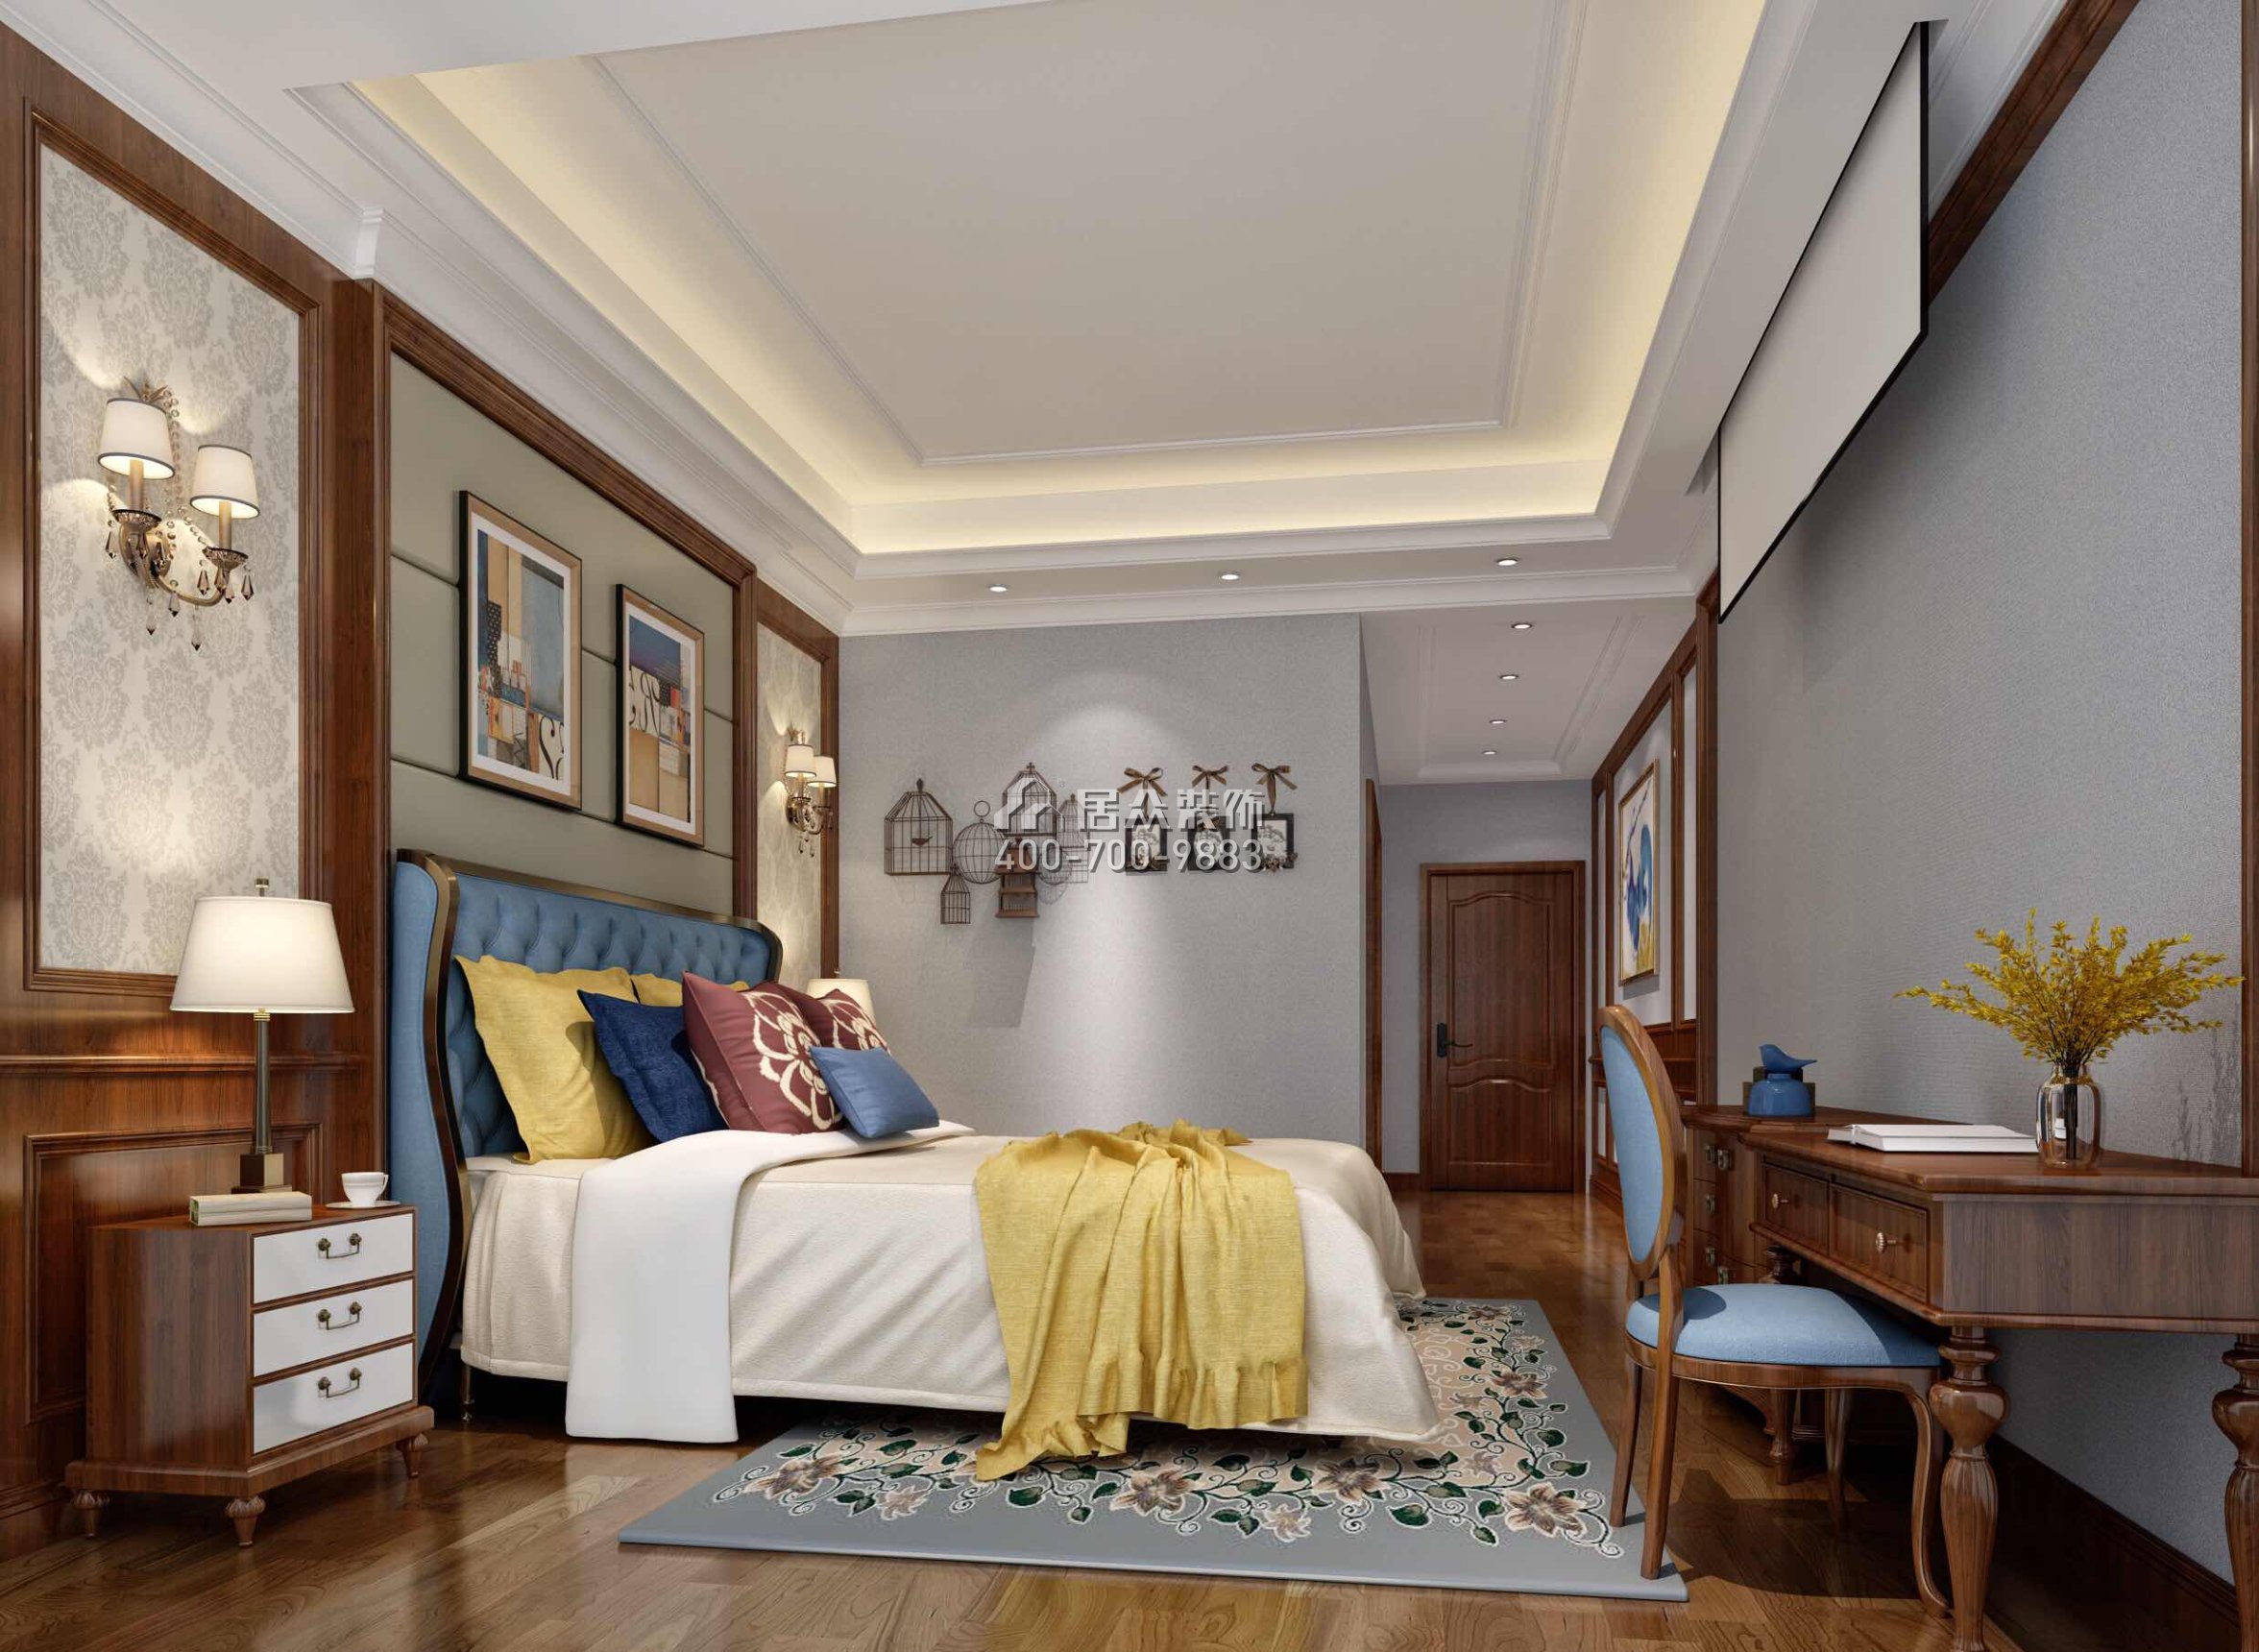 碧水天源600平方米美式風格別墅戶型臥室裝修效果圖